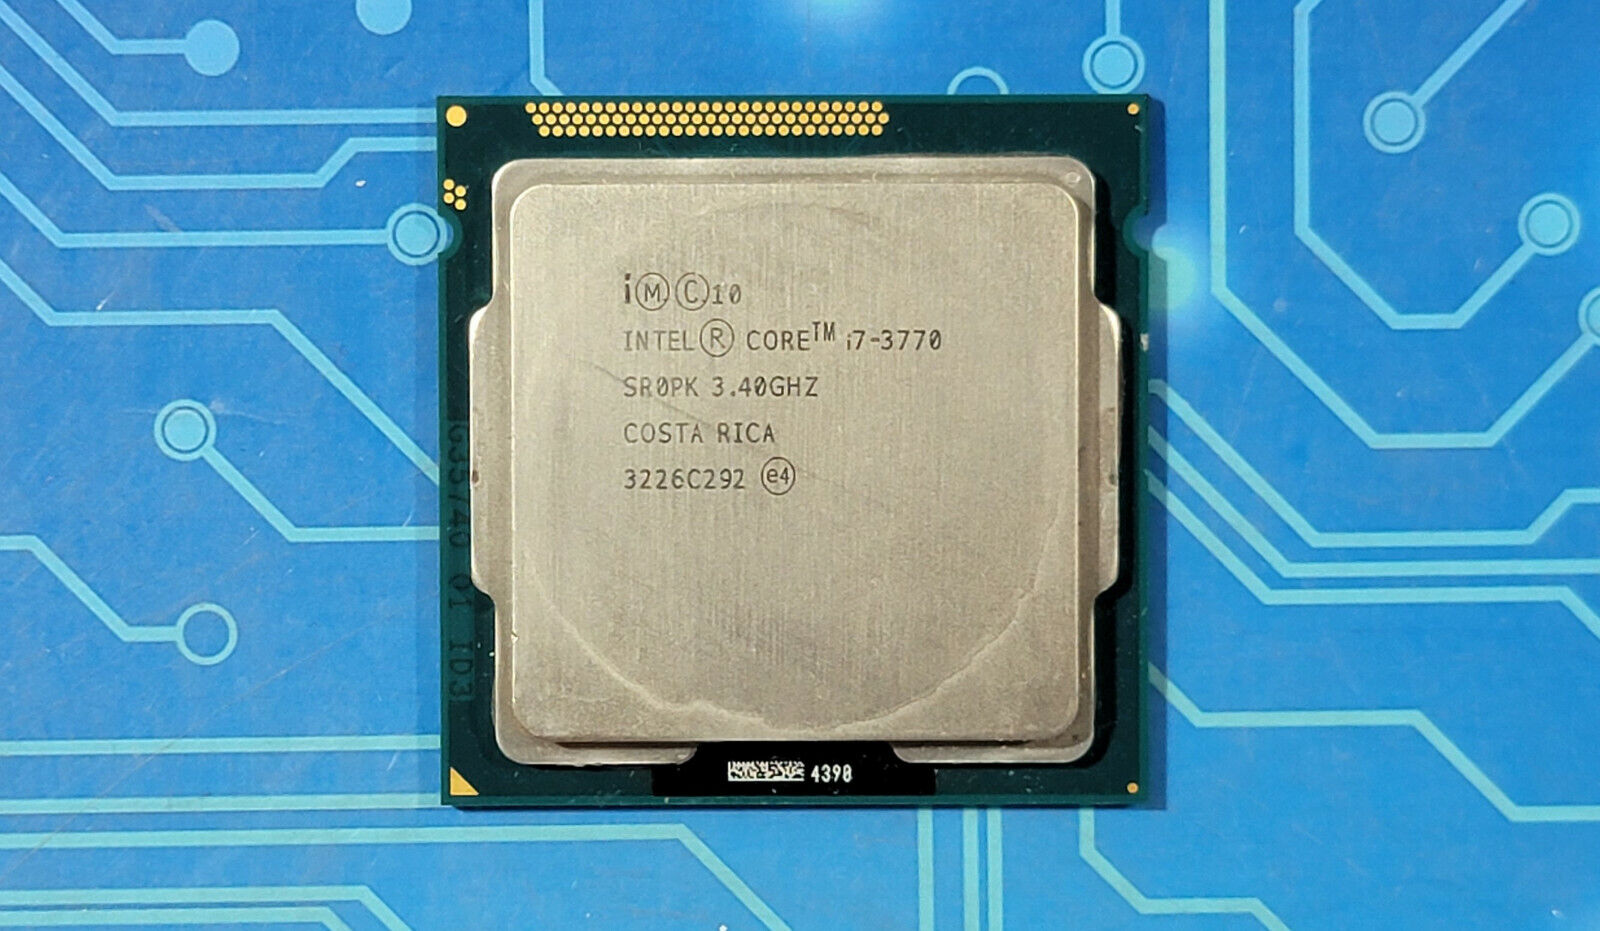 Intel Core i7-3770 3.4GHz Quad-Core SR0PK CPU Processor for Sale